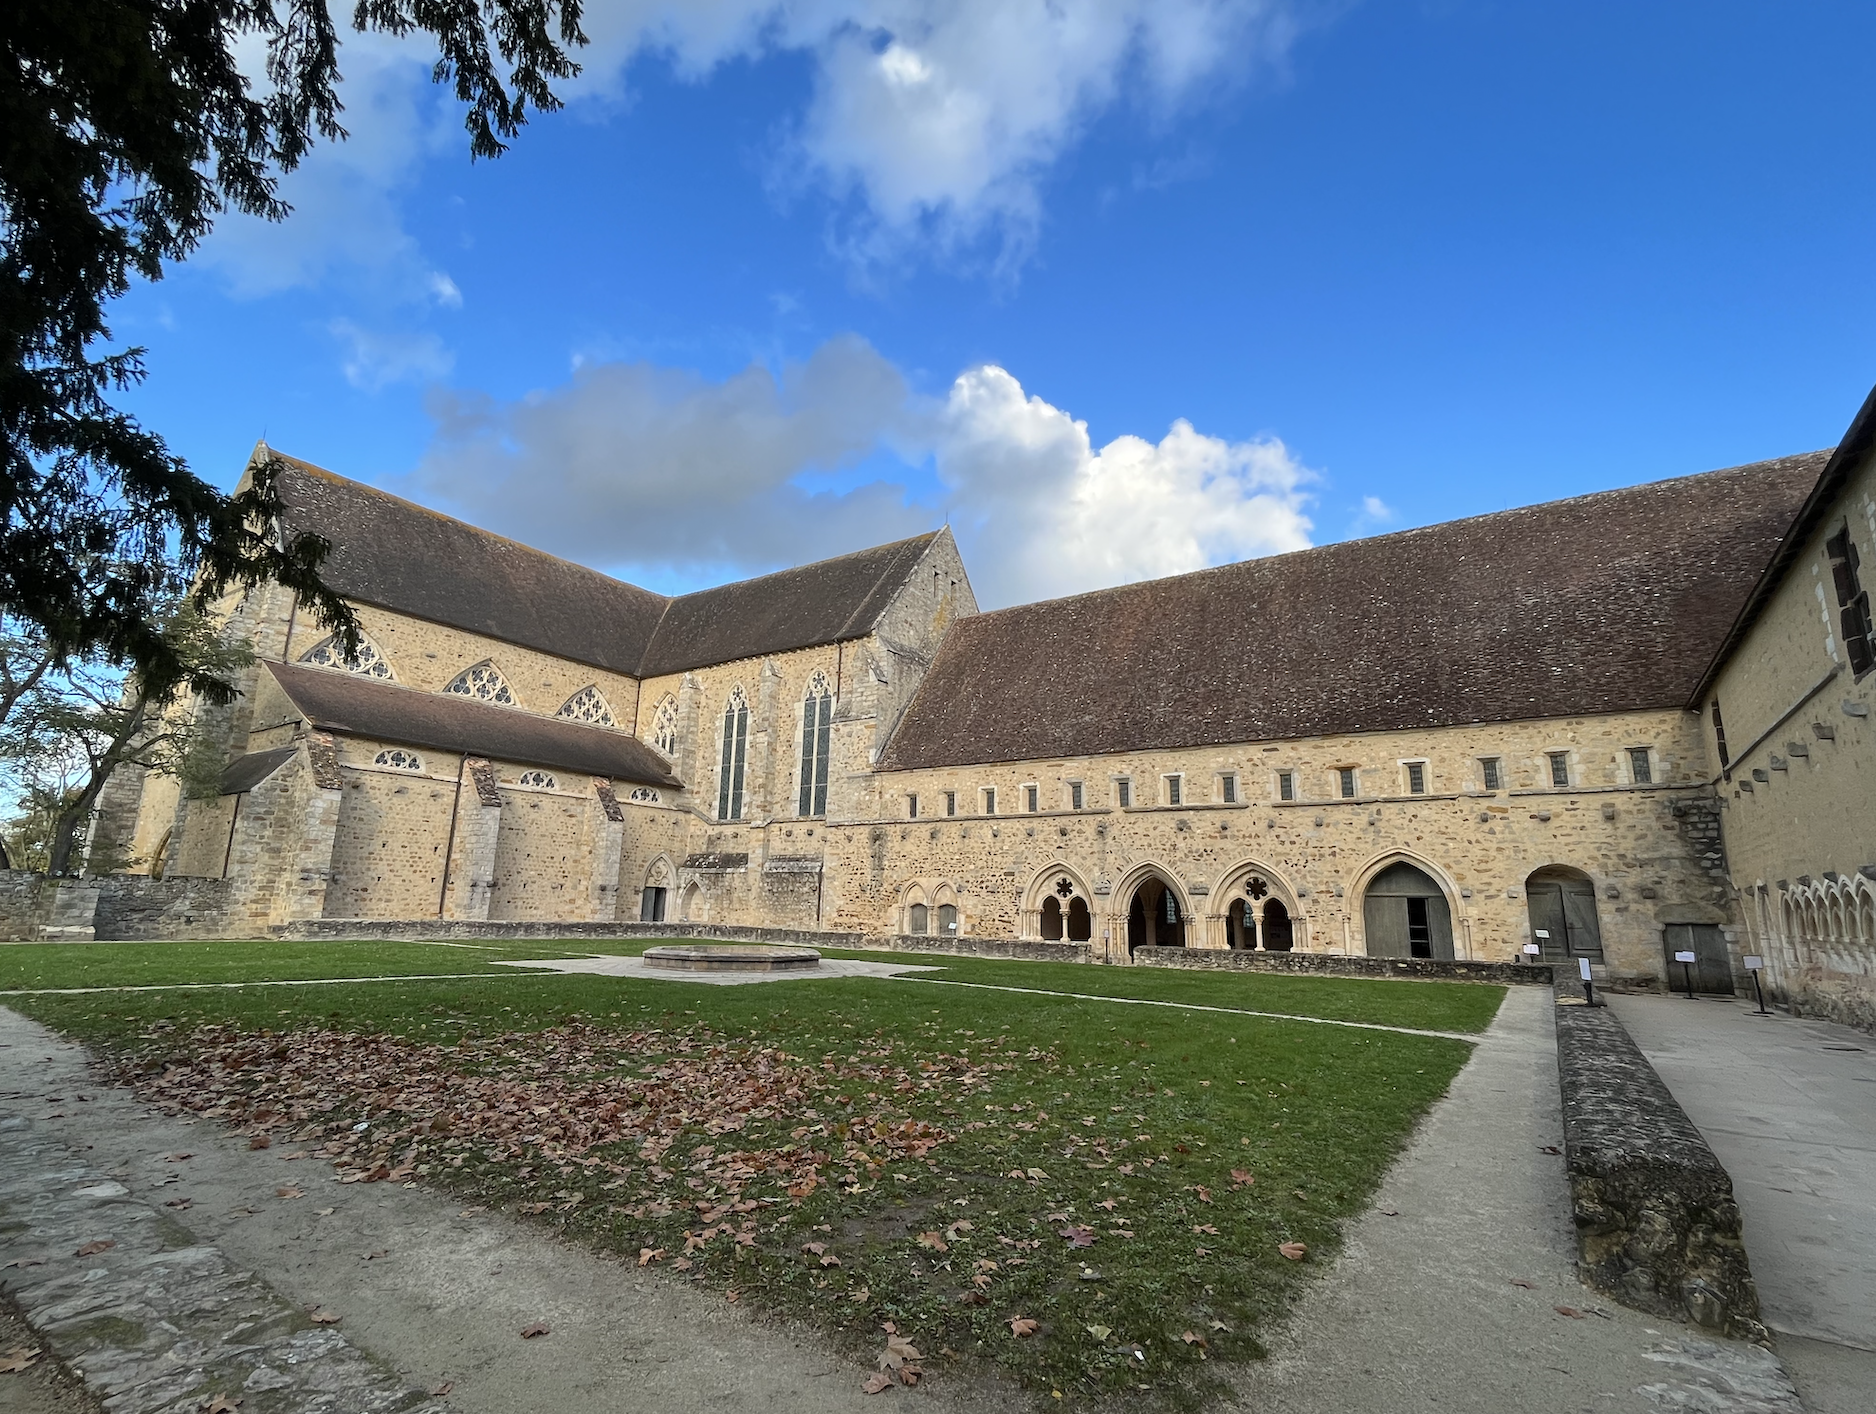 Rencontre Tourisme durable & Culture / Abbaye royale de l’Epau